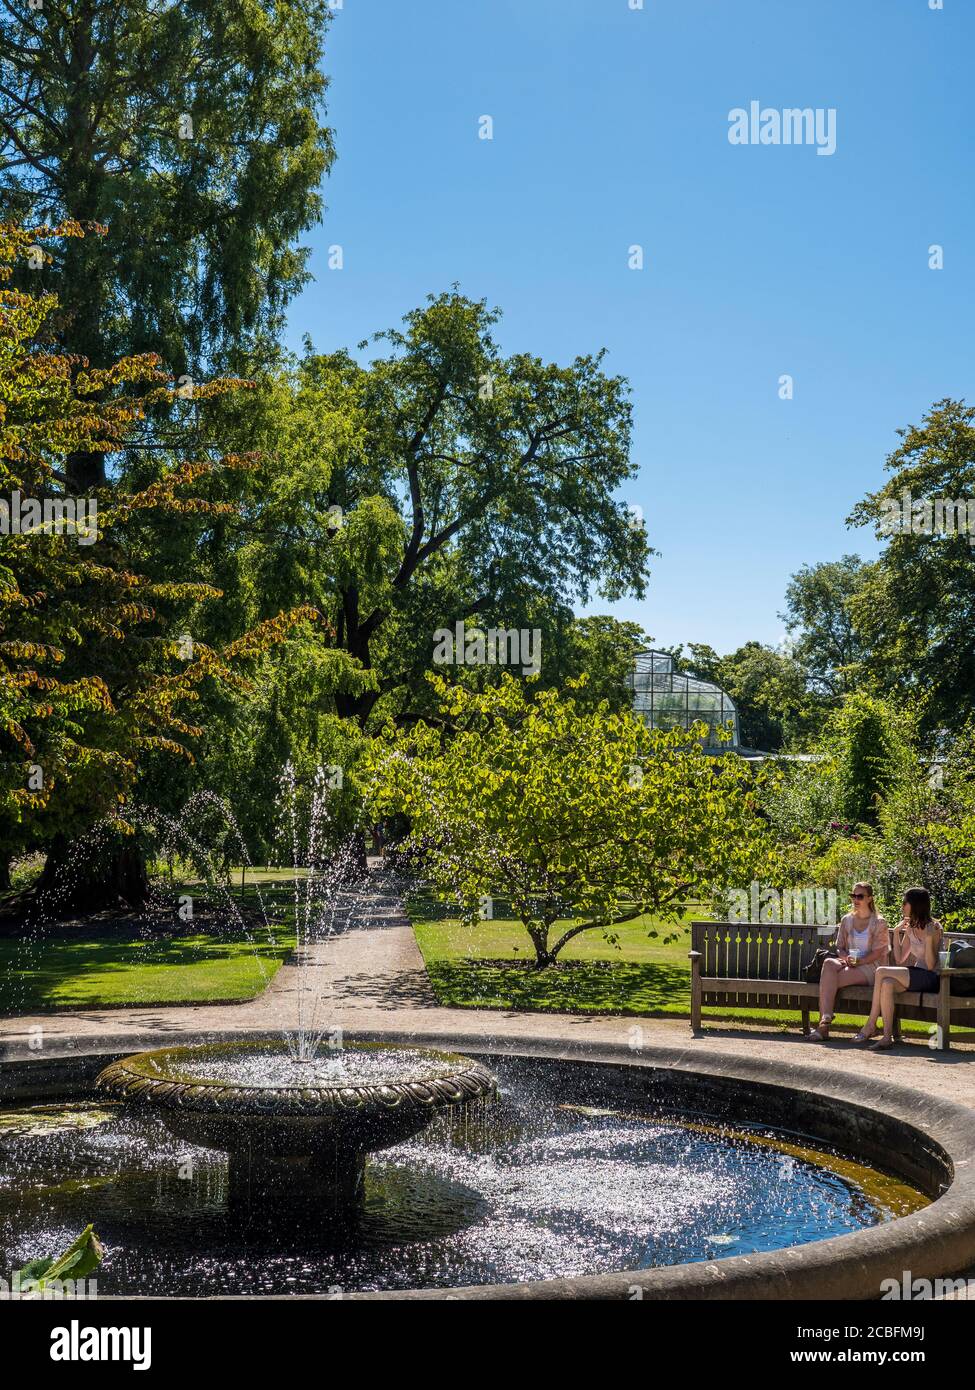 Zwei junge Frau neben dem Pool mit Brunnen, University of Oxford Botanical Gardens, Oxford, Oxfordshire, England, Großbritannien, GB. Stockfoto